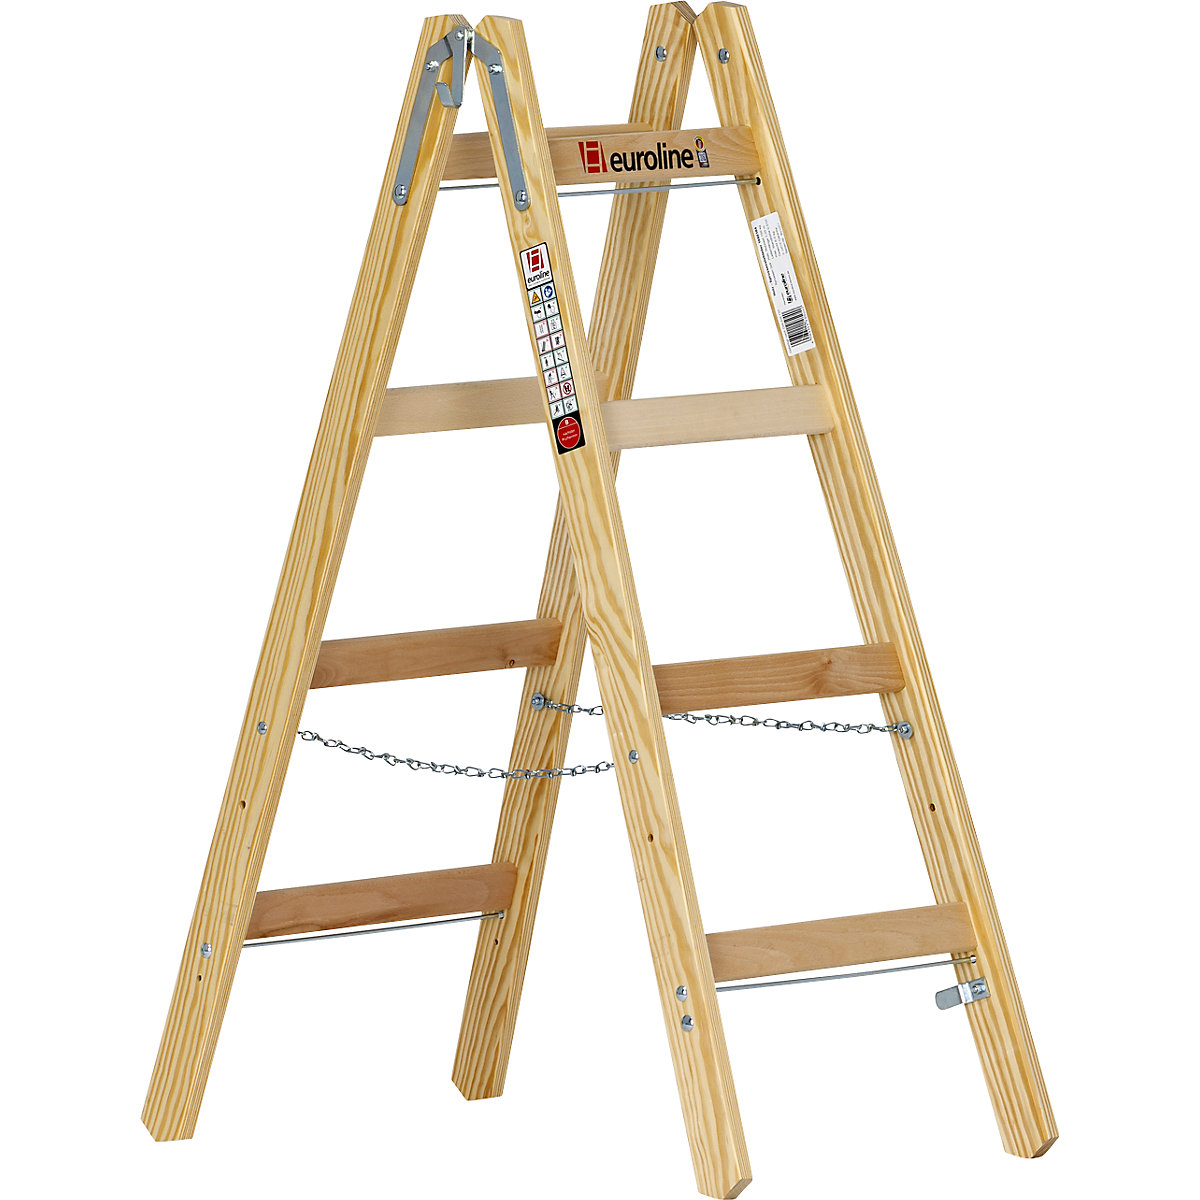 Wooden rung ladder - euroline